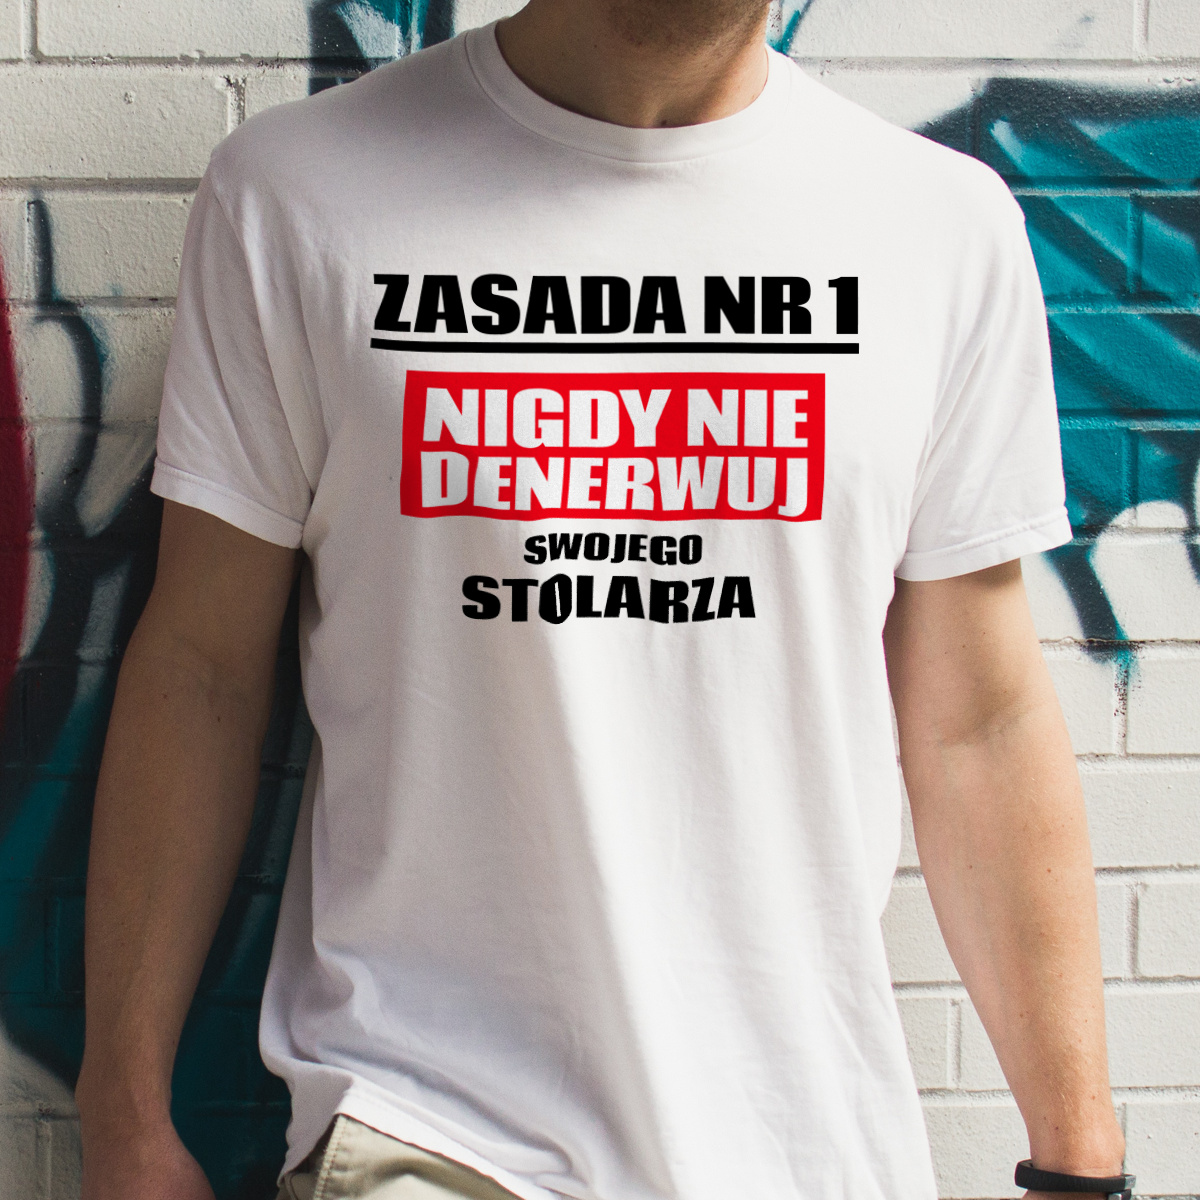 Zasada Nr 1 - Nigdy Nie Denerwuj Swojego Stolarza - Męska Koszulka Biała